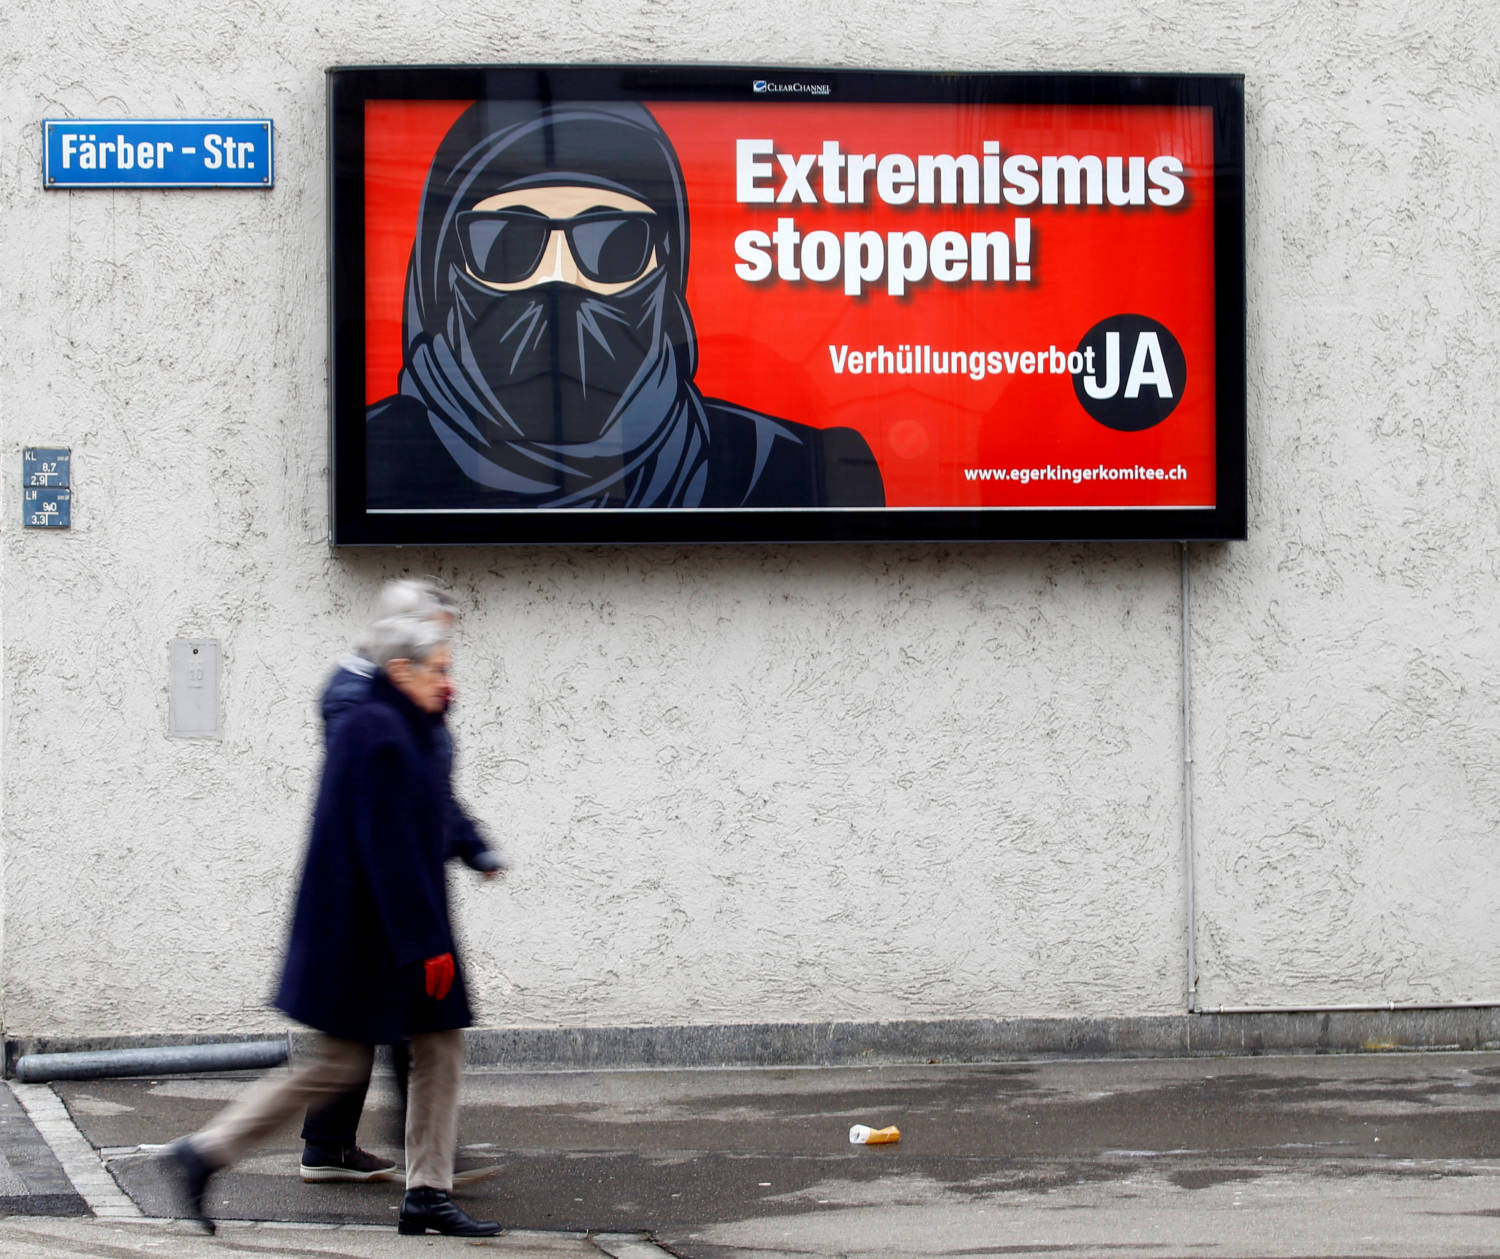 Οι Ελβετοί ψηφοφόροι θα αποφασίσουν την απαγόρευση των καλυμμάτων προσώπου